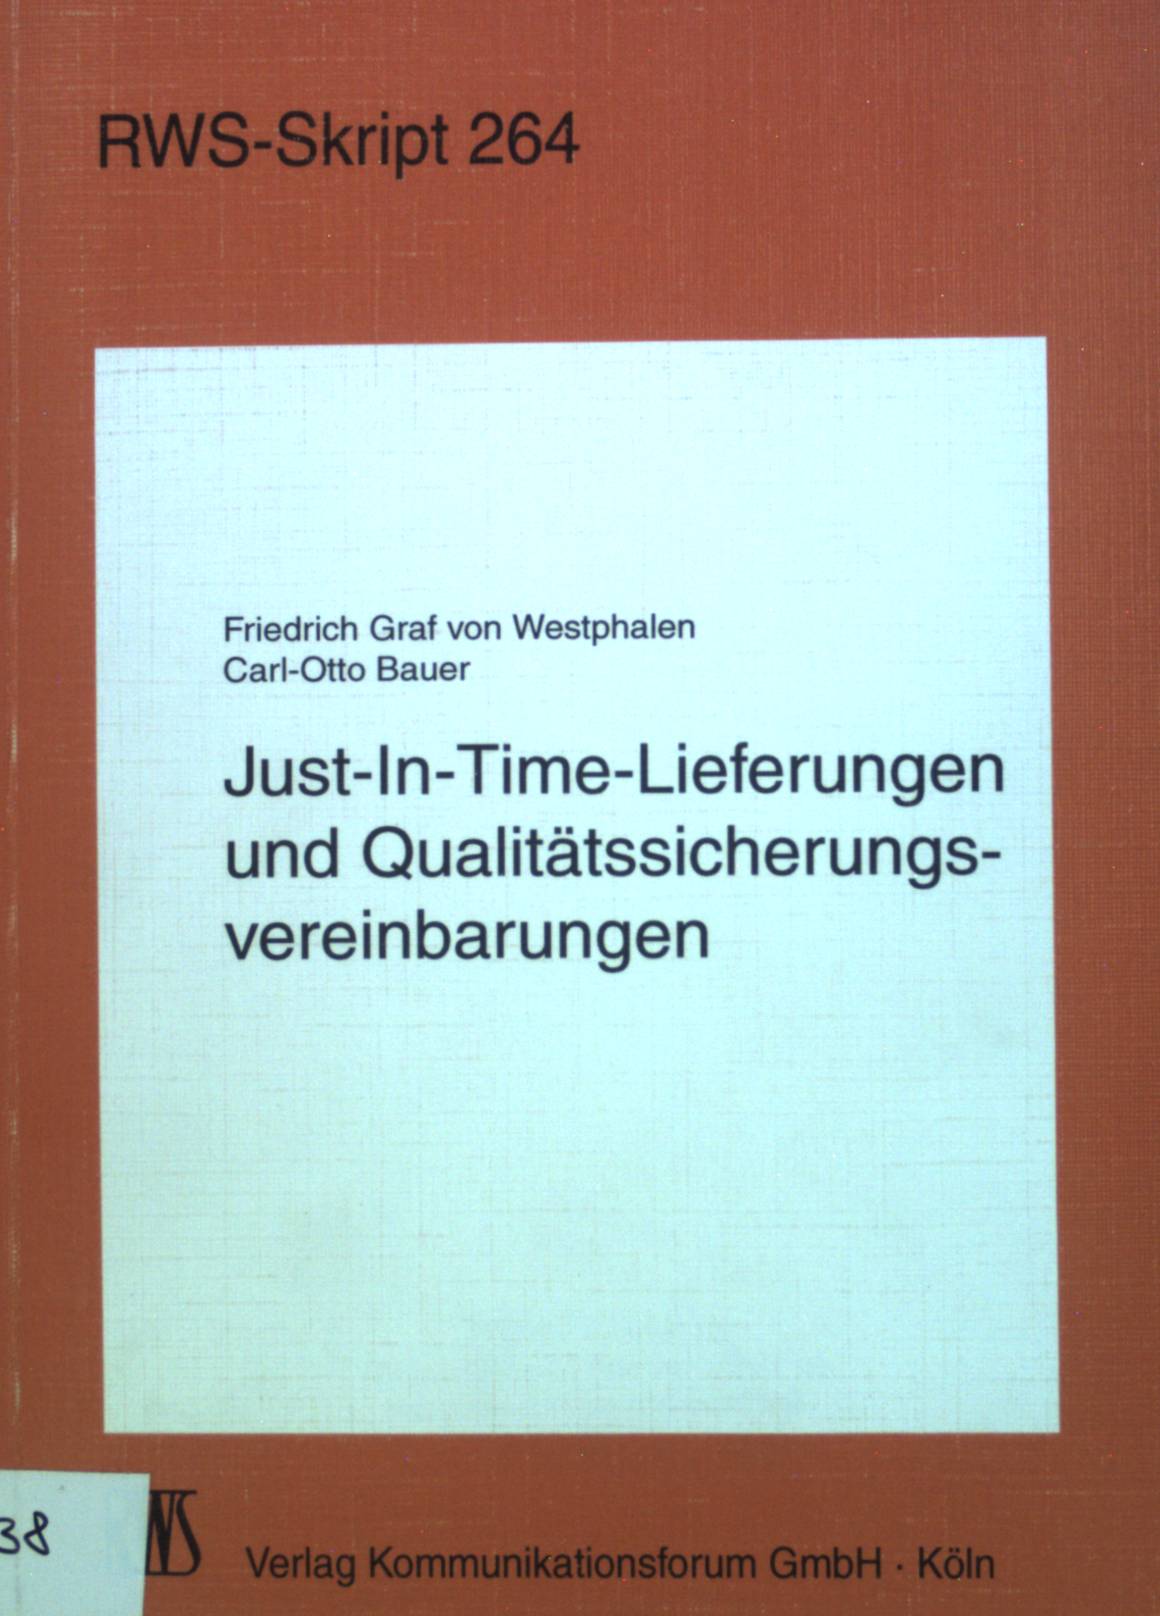 Just-in-time-Lieferungen und Qualitätssicherungsvereinbarungen. RWS-Skript ; 264 - Westphalen, Friedrich, Graf von und Carl-Otto Bauer